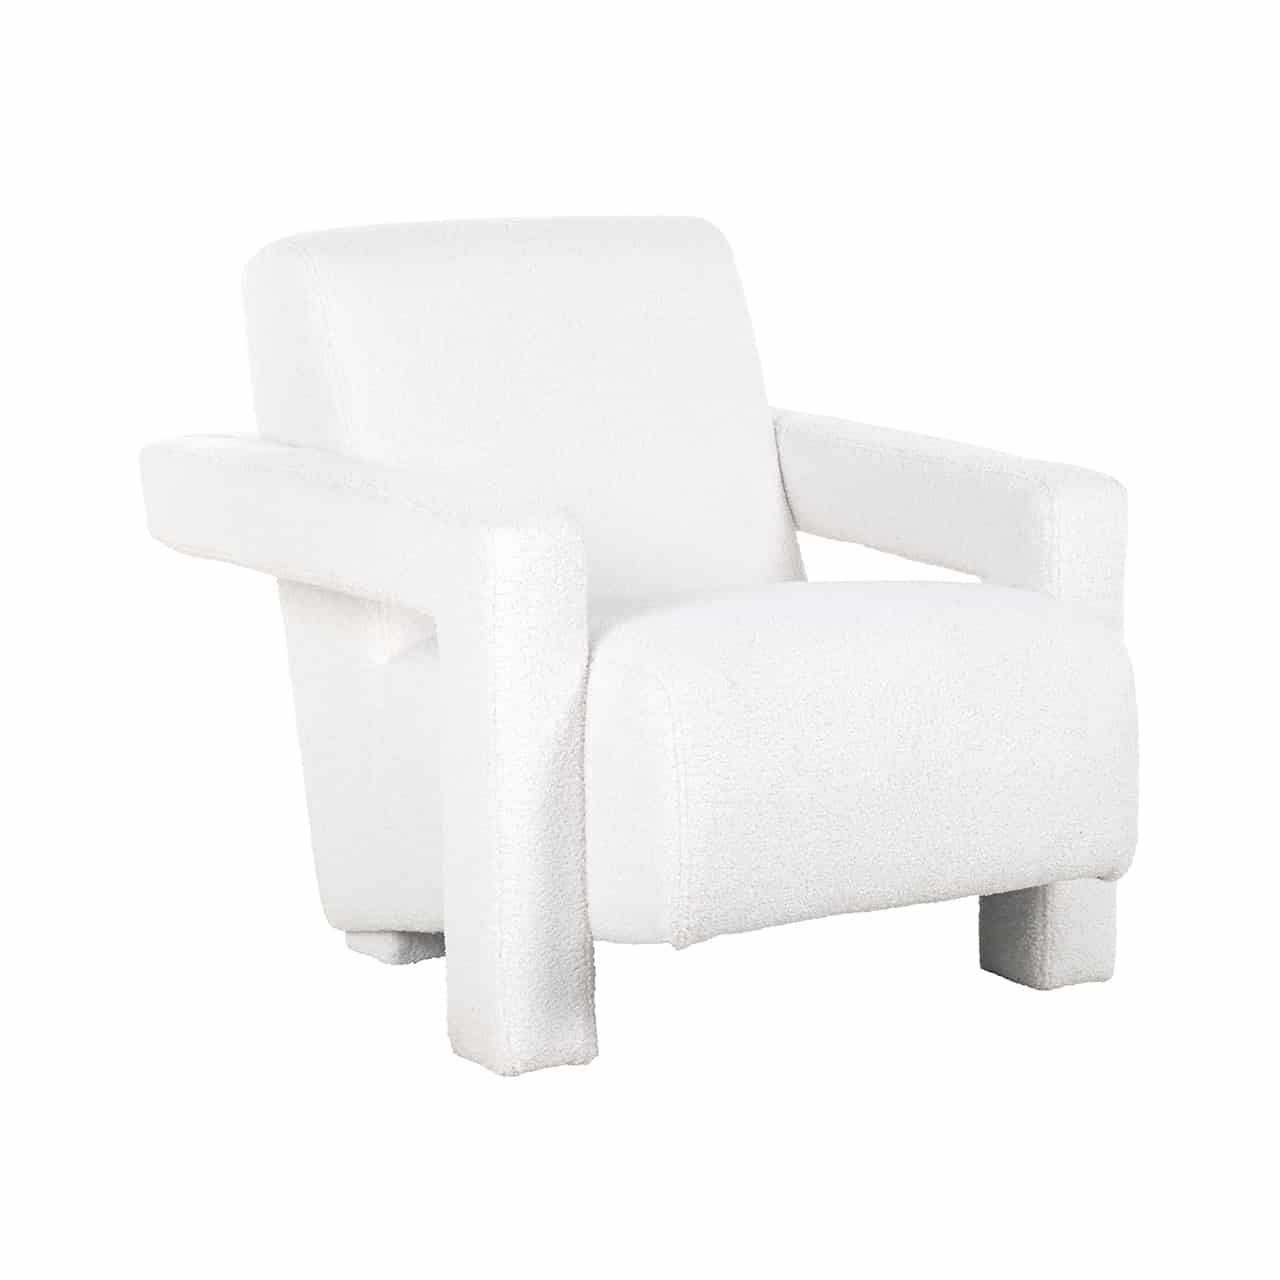 Moderner, weißer Sessel mit flauschigem Bezug; die dicken Armlehnen sind im rechten Winkel angelegt und bilden so auch die Beine .